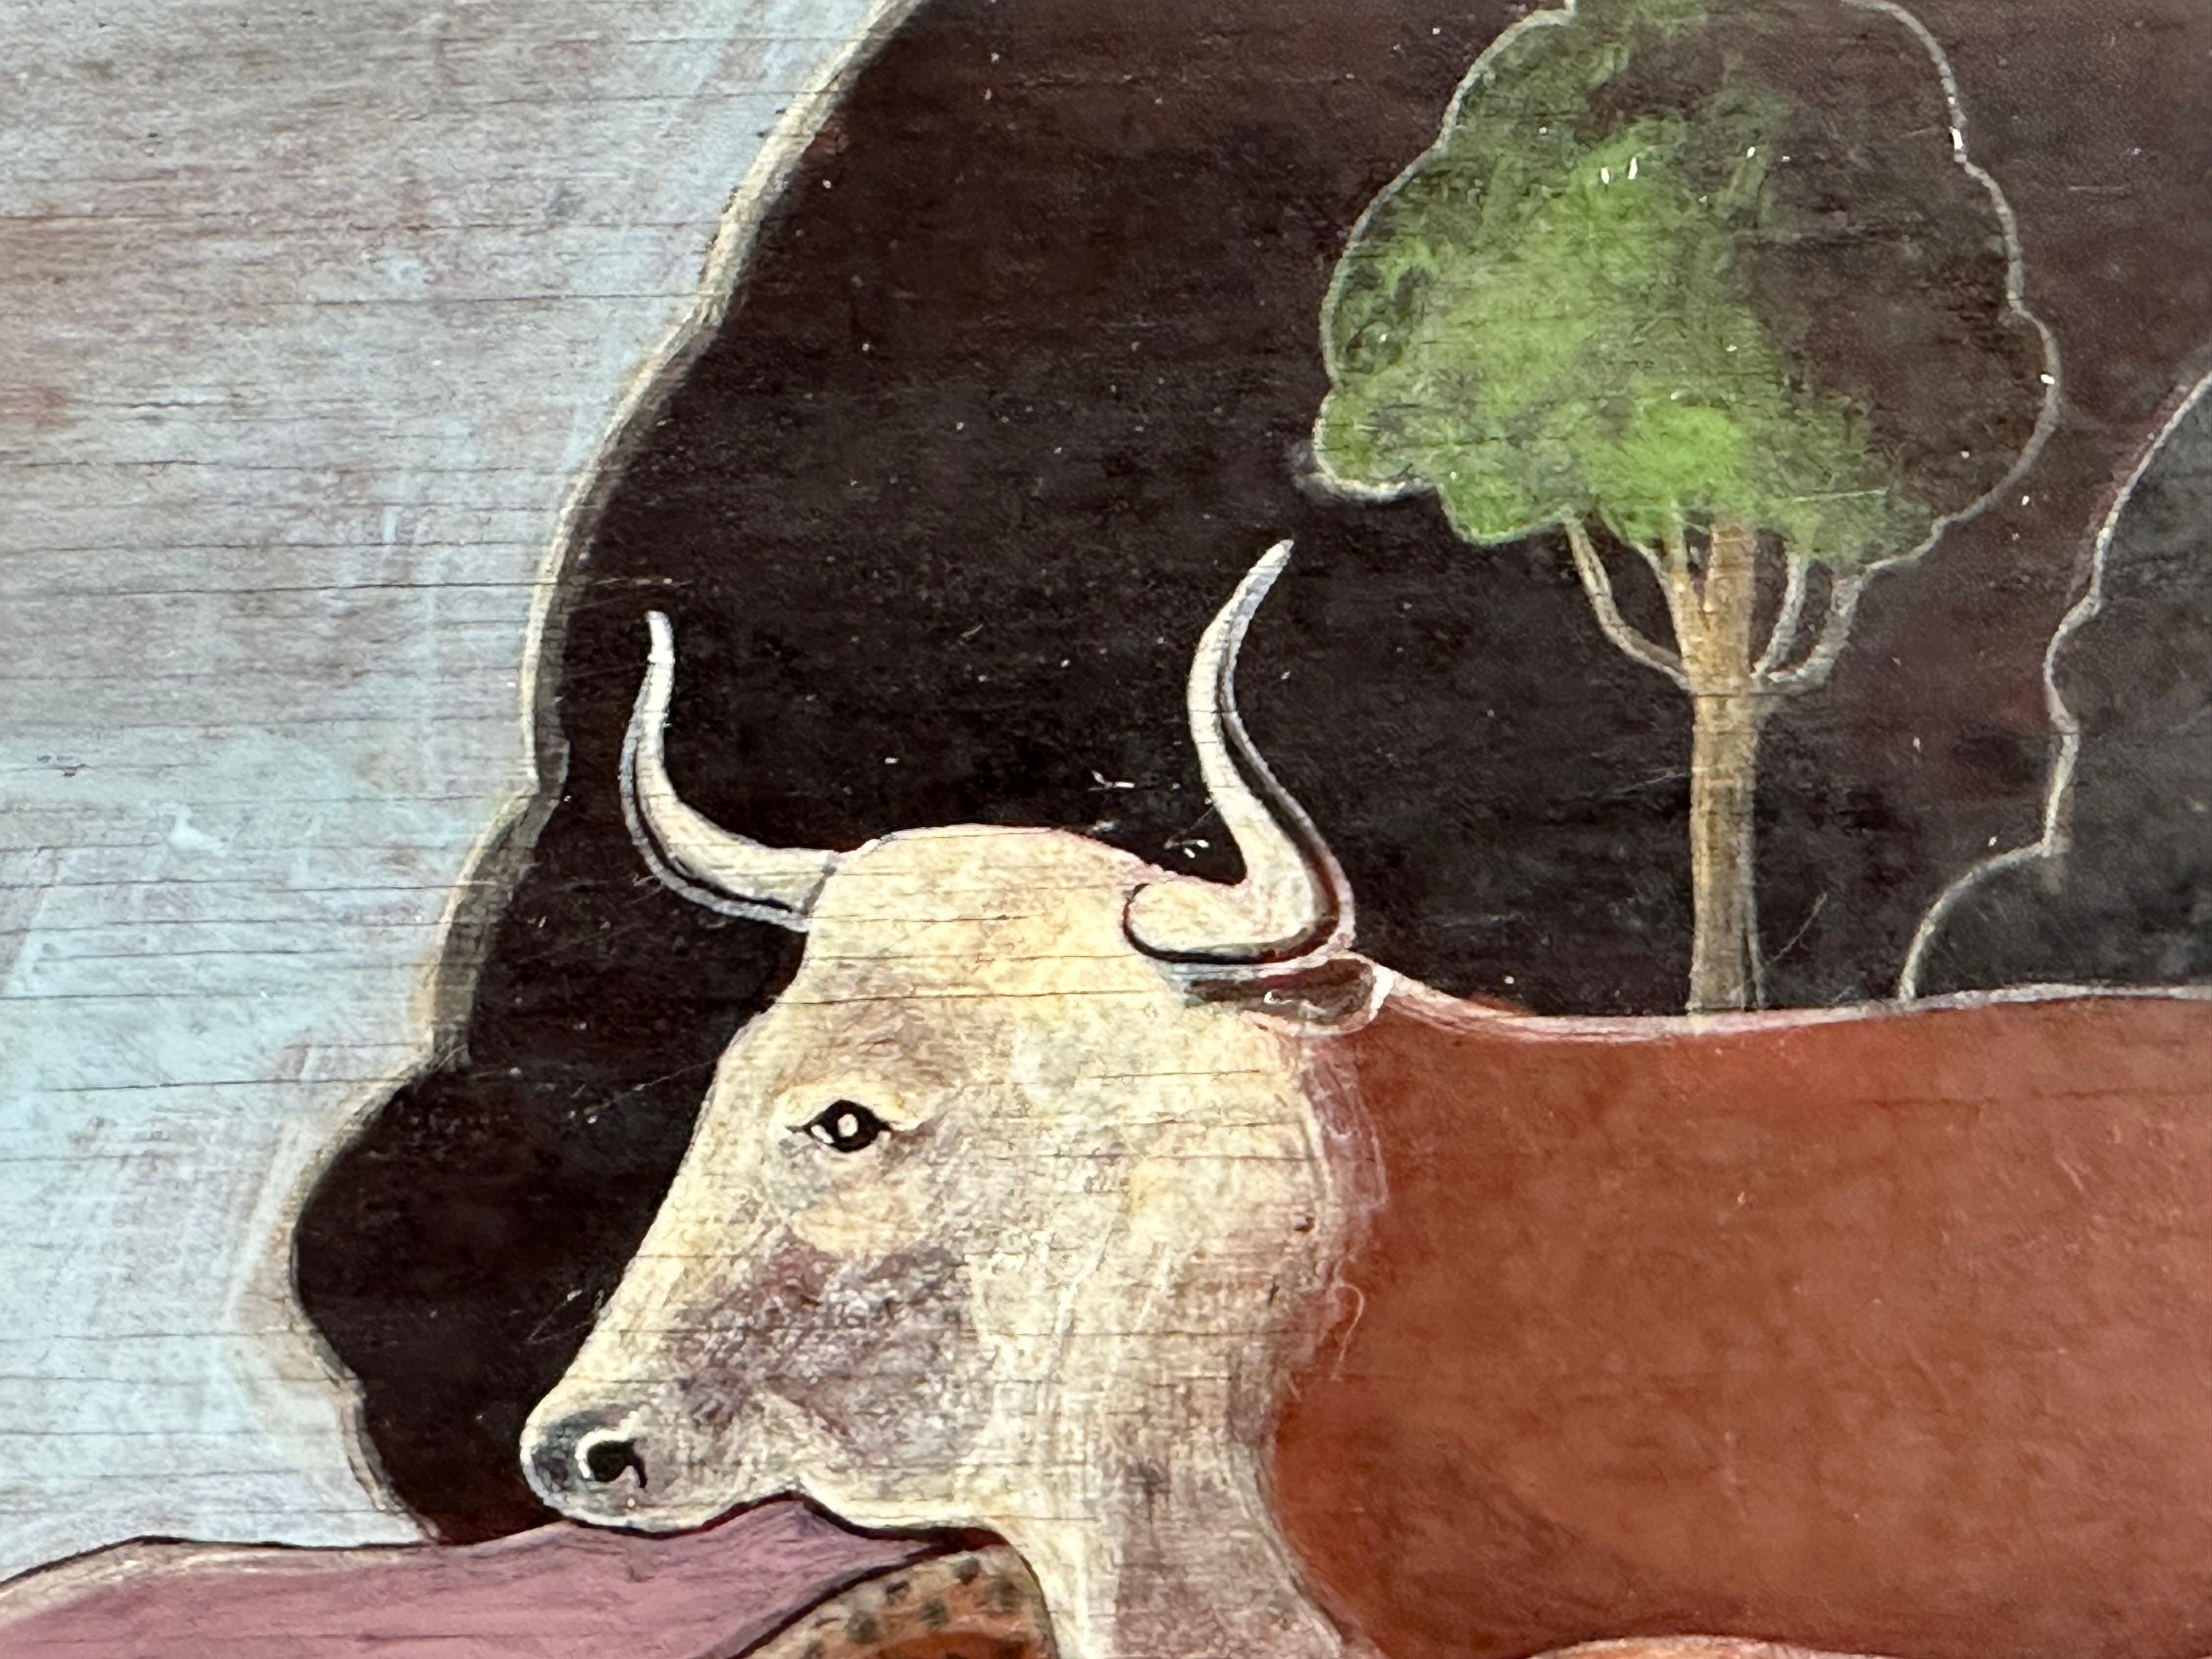 Peinture surréaliste basée sur le tableau d'Edward Hicks, Peaceable Kingdom. Huile sur panneau de bois, 14 x 20 pouces. Signé Sovjani, 1970. 

L'élément le plus remarquable de cette image est l'apparition d'un Boston Terrier au centre. 